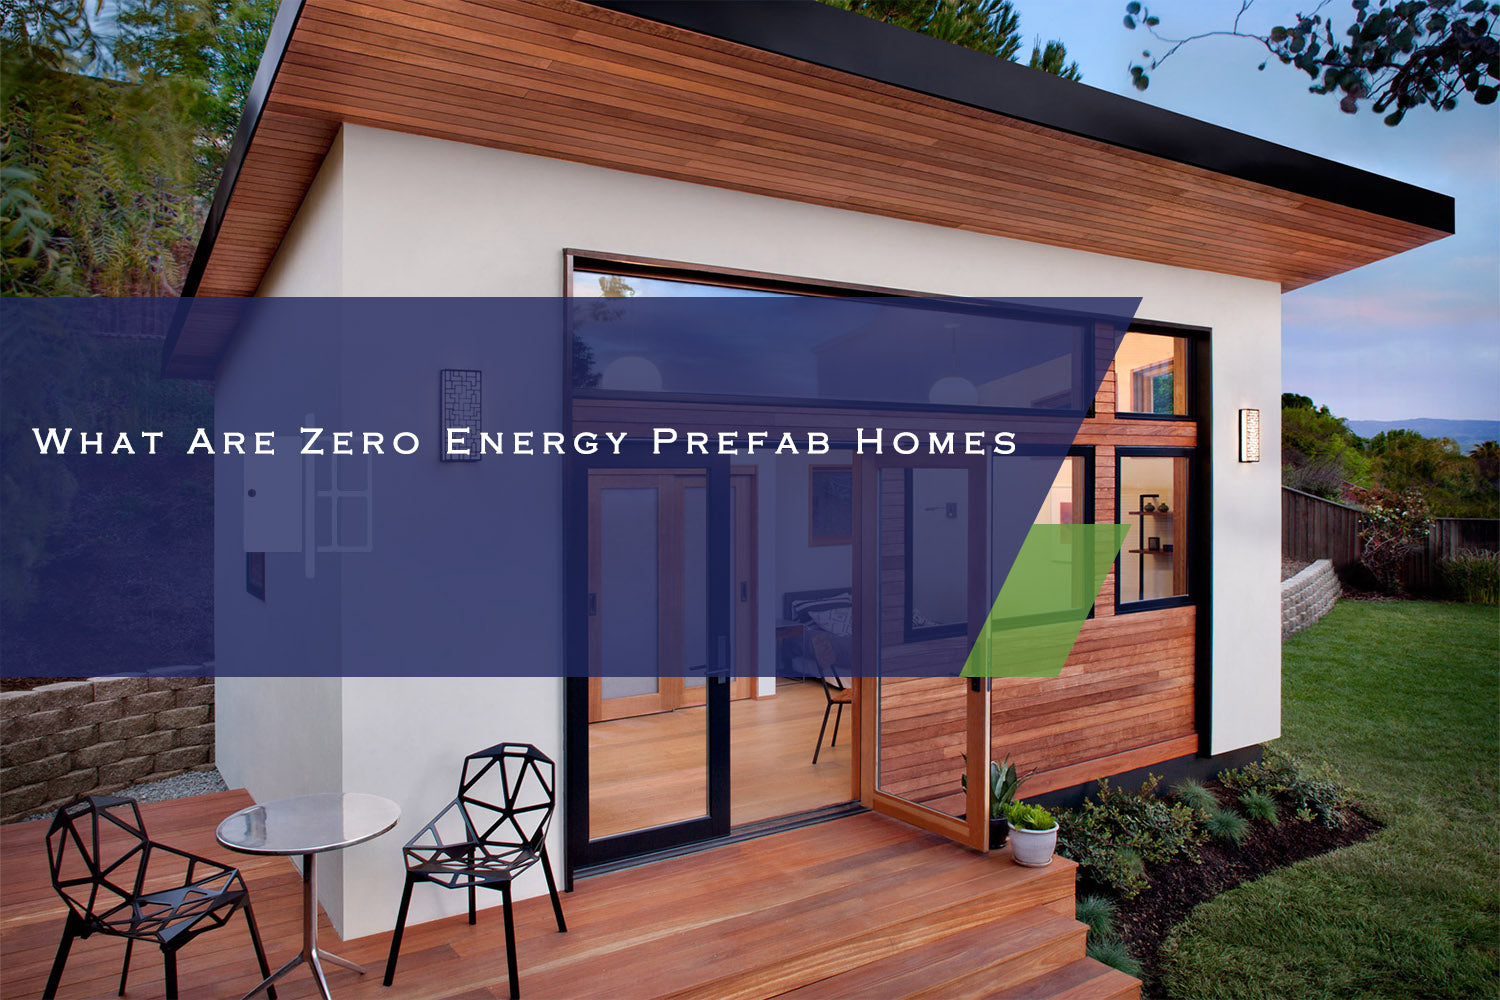 What Are Zero Energy Prefab Homes?